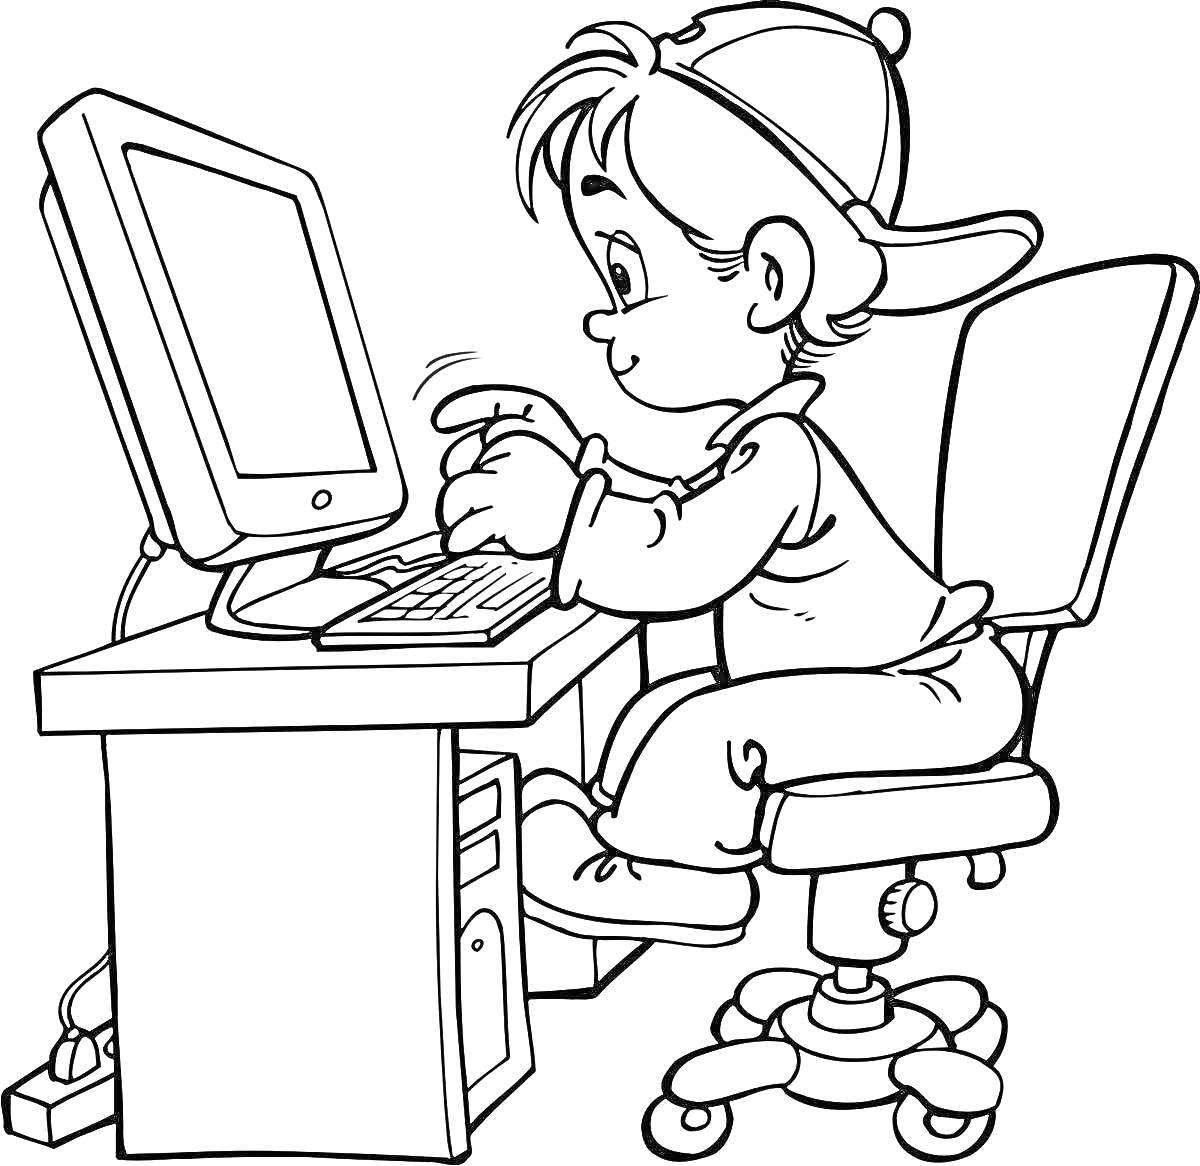 Мальчик за компьютером, детская деревянная скамья, монитор, системный блок, клавиатура, компьютерный стул